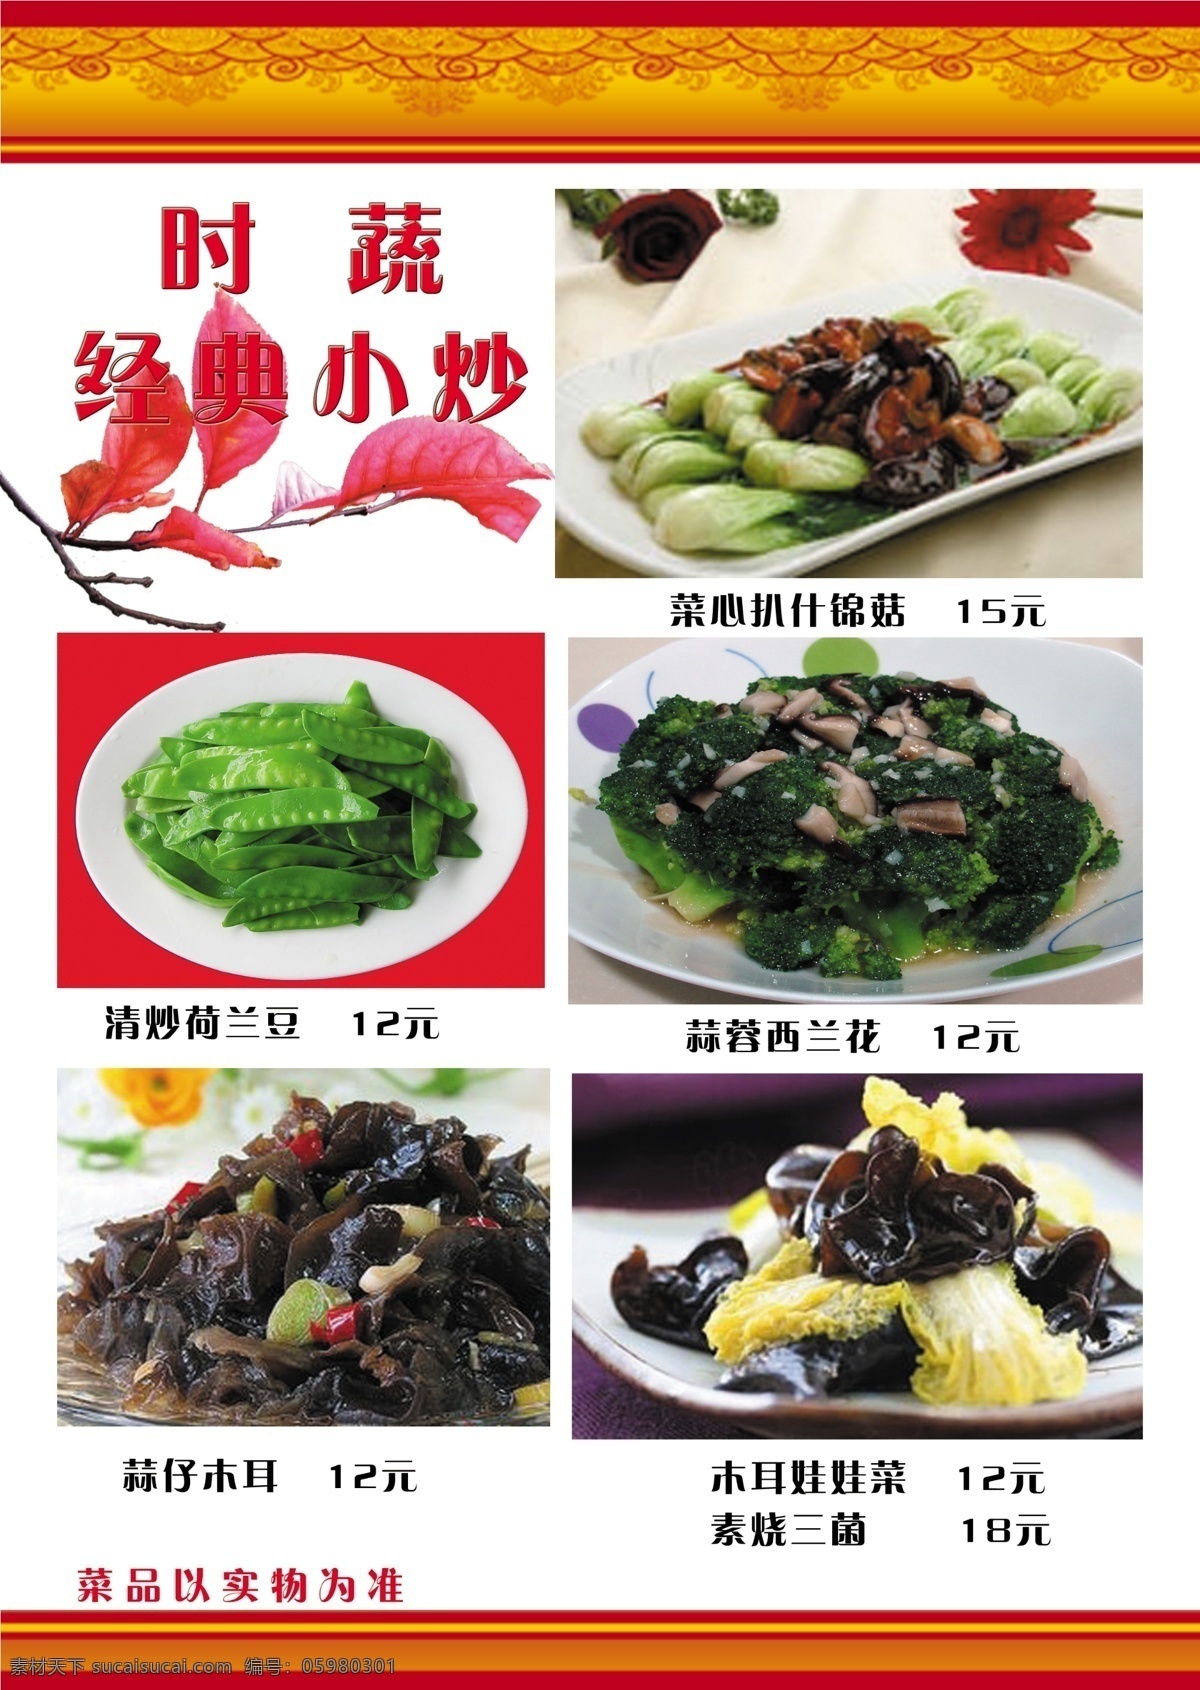 瑞 兆 饺 香阁 菜谱 食品餐饮 菜单菜谱 分层psd 平面广告 海报 设计素材 平面模板 psd源文件 白色